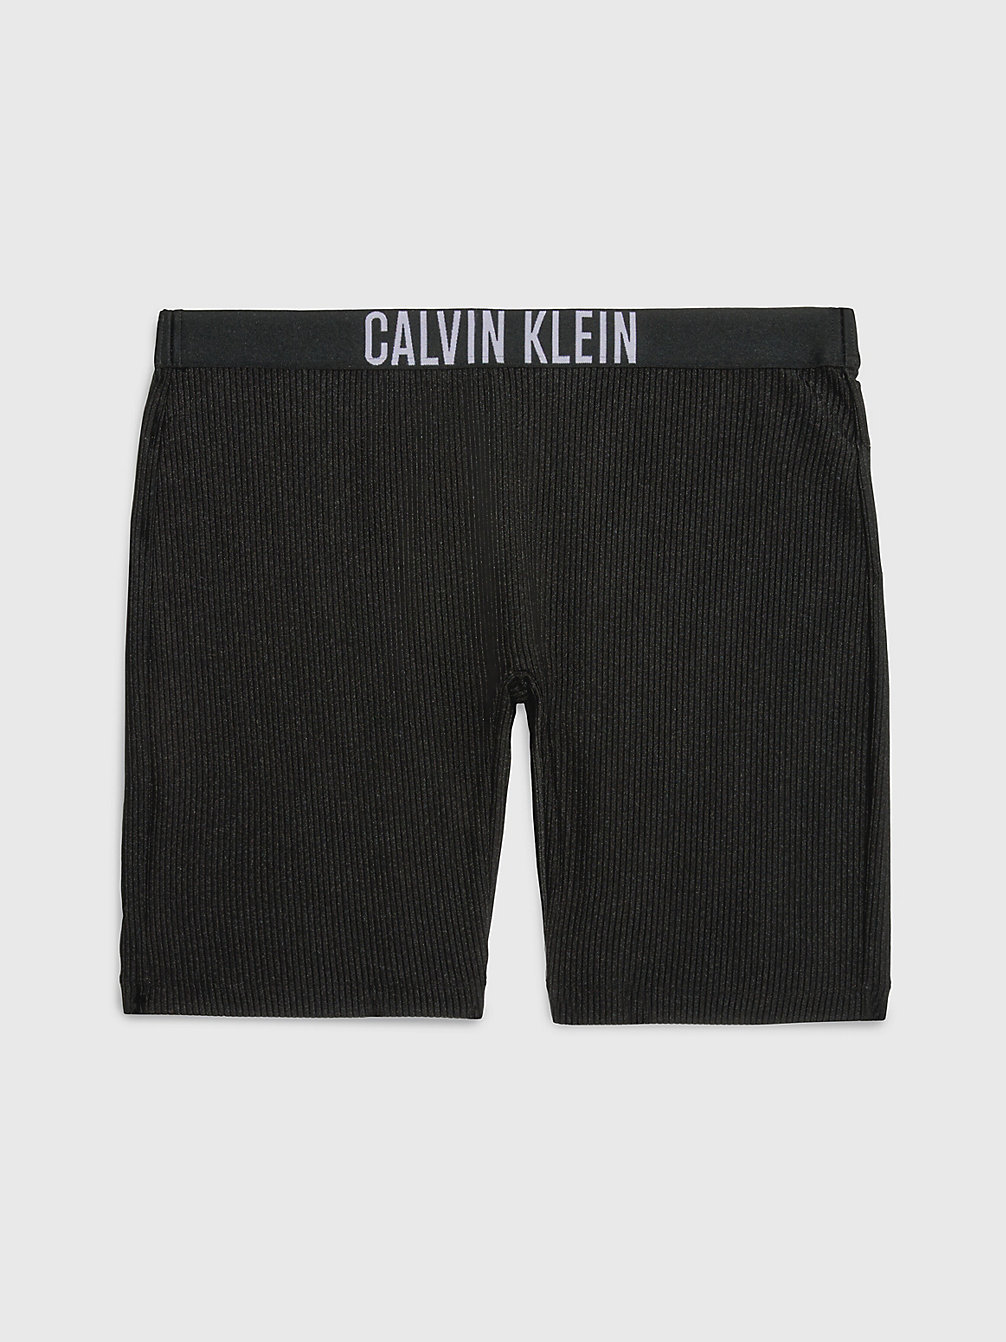 PVH BLACK > Badeshorts – Intense Power > undefined Damen - Calvin Klein